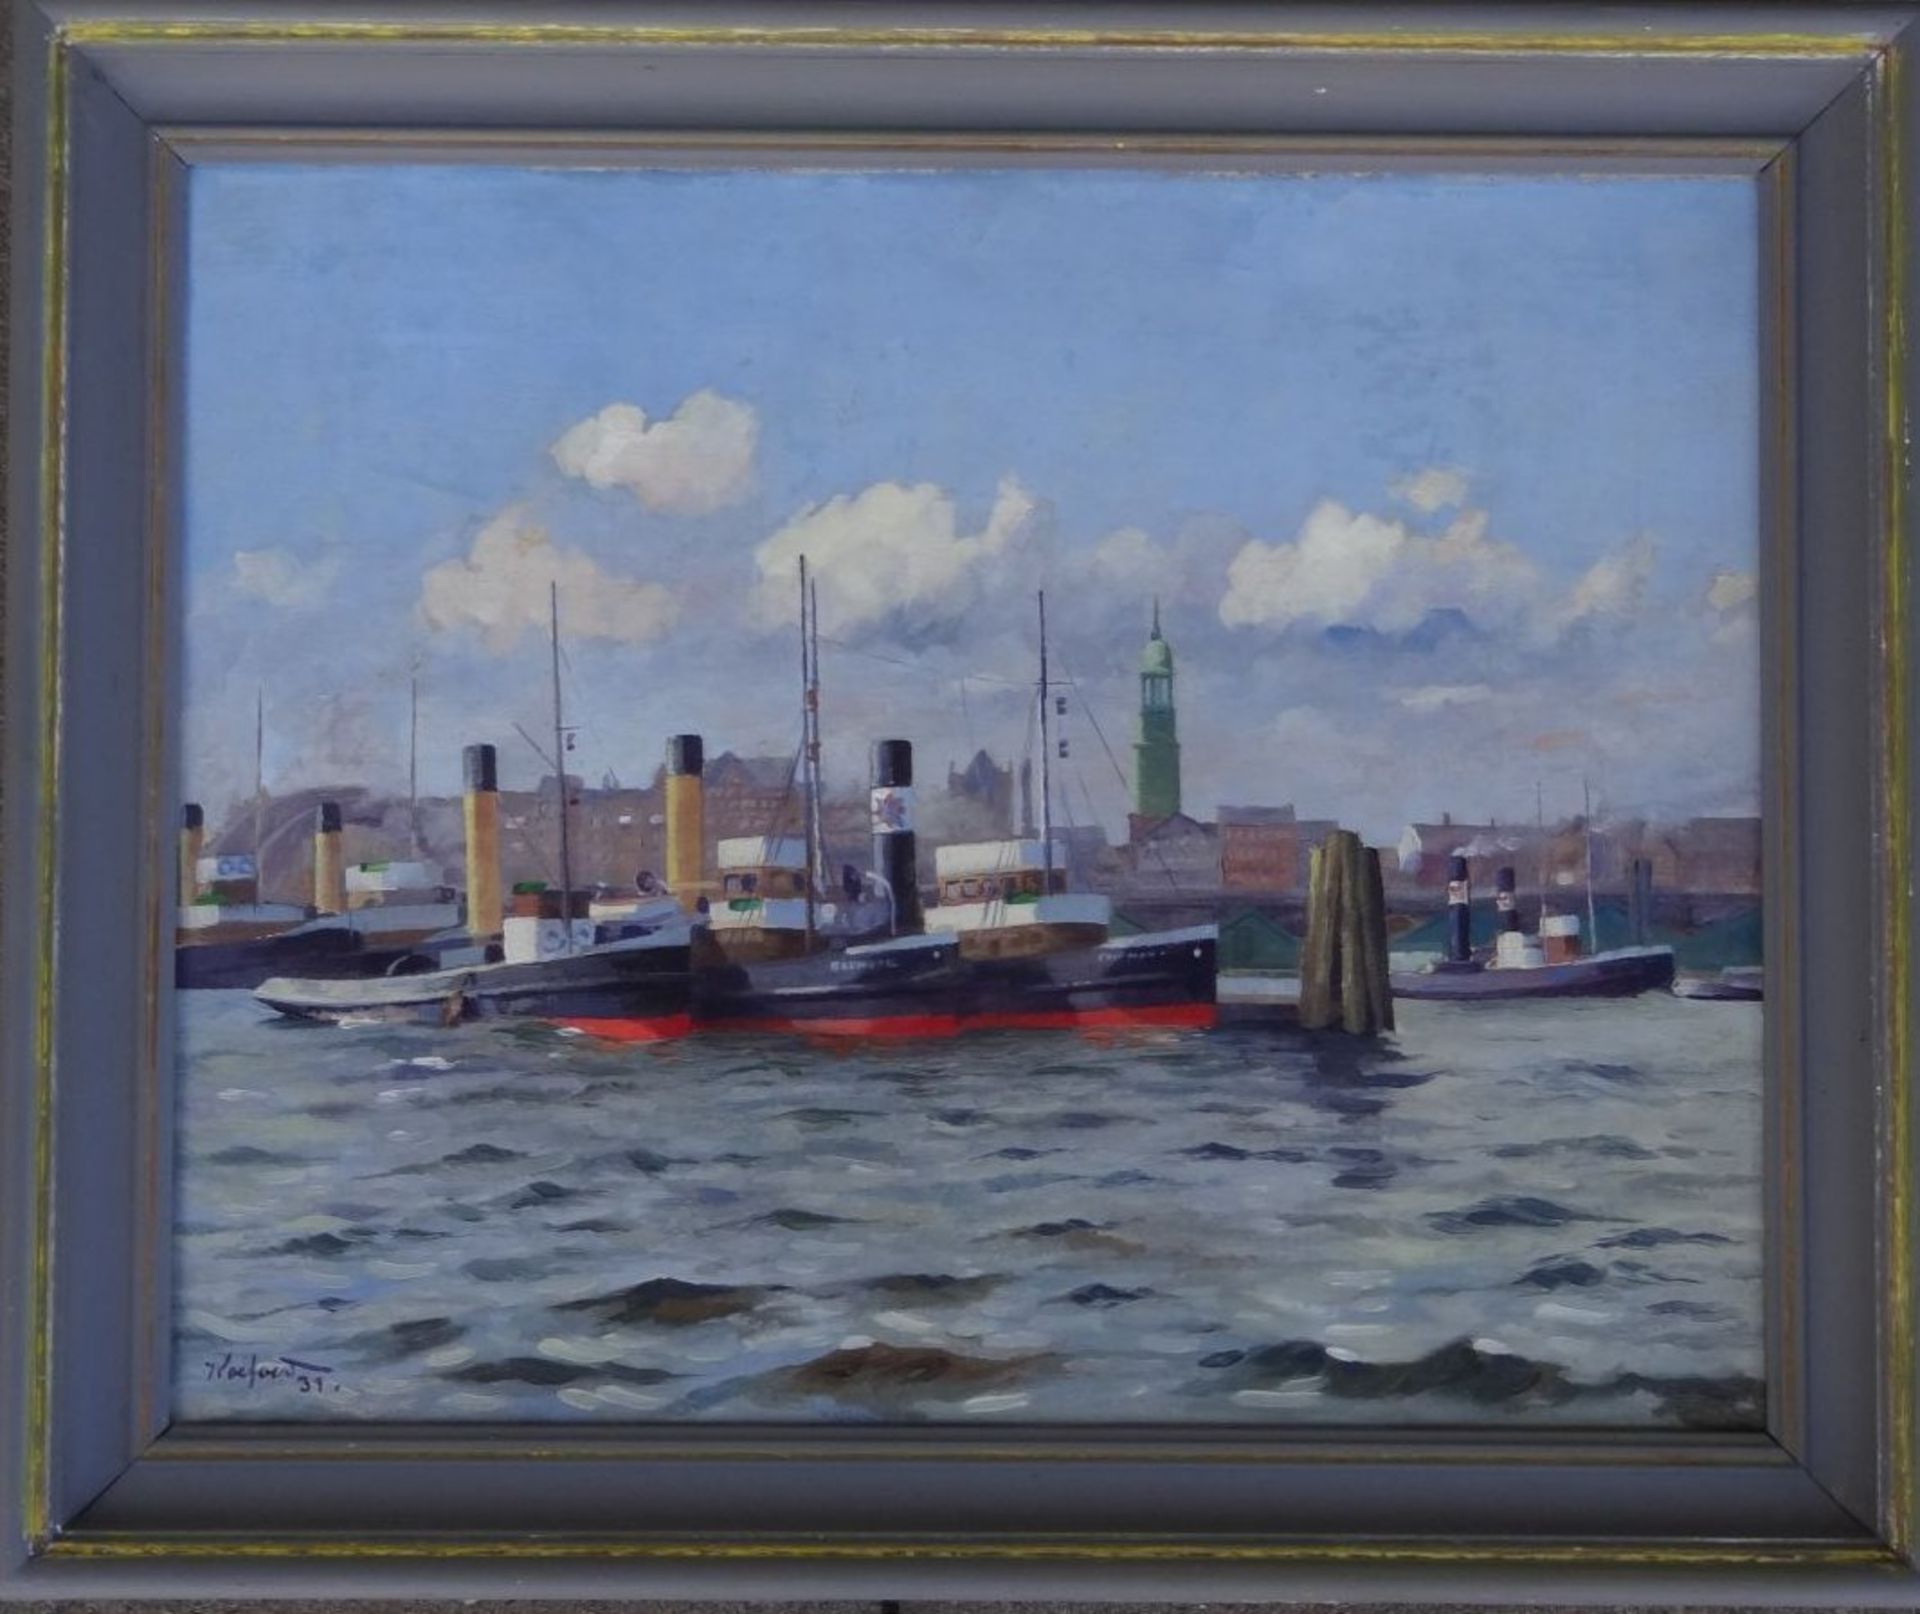 Koeford (oder ähnlich), 1931 "Hamburger Hafen", Öl/Leinen, gerahmt, RG 42x50 cm, frisch - Bild 2 aus 6